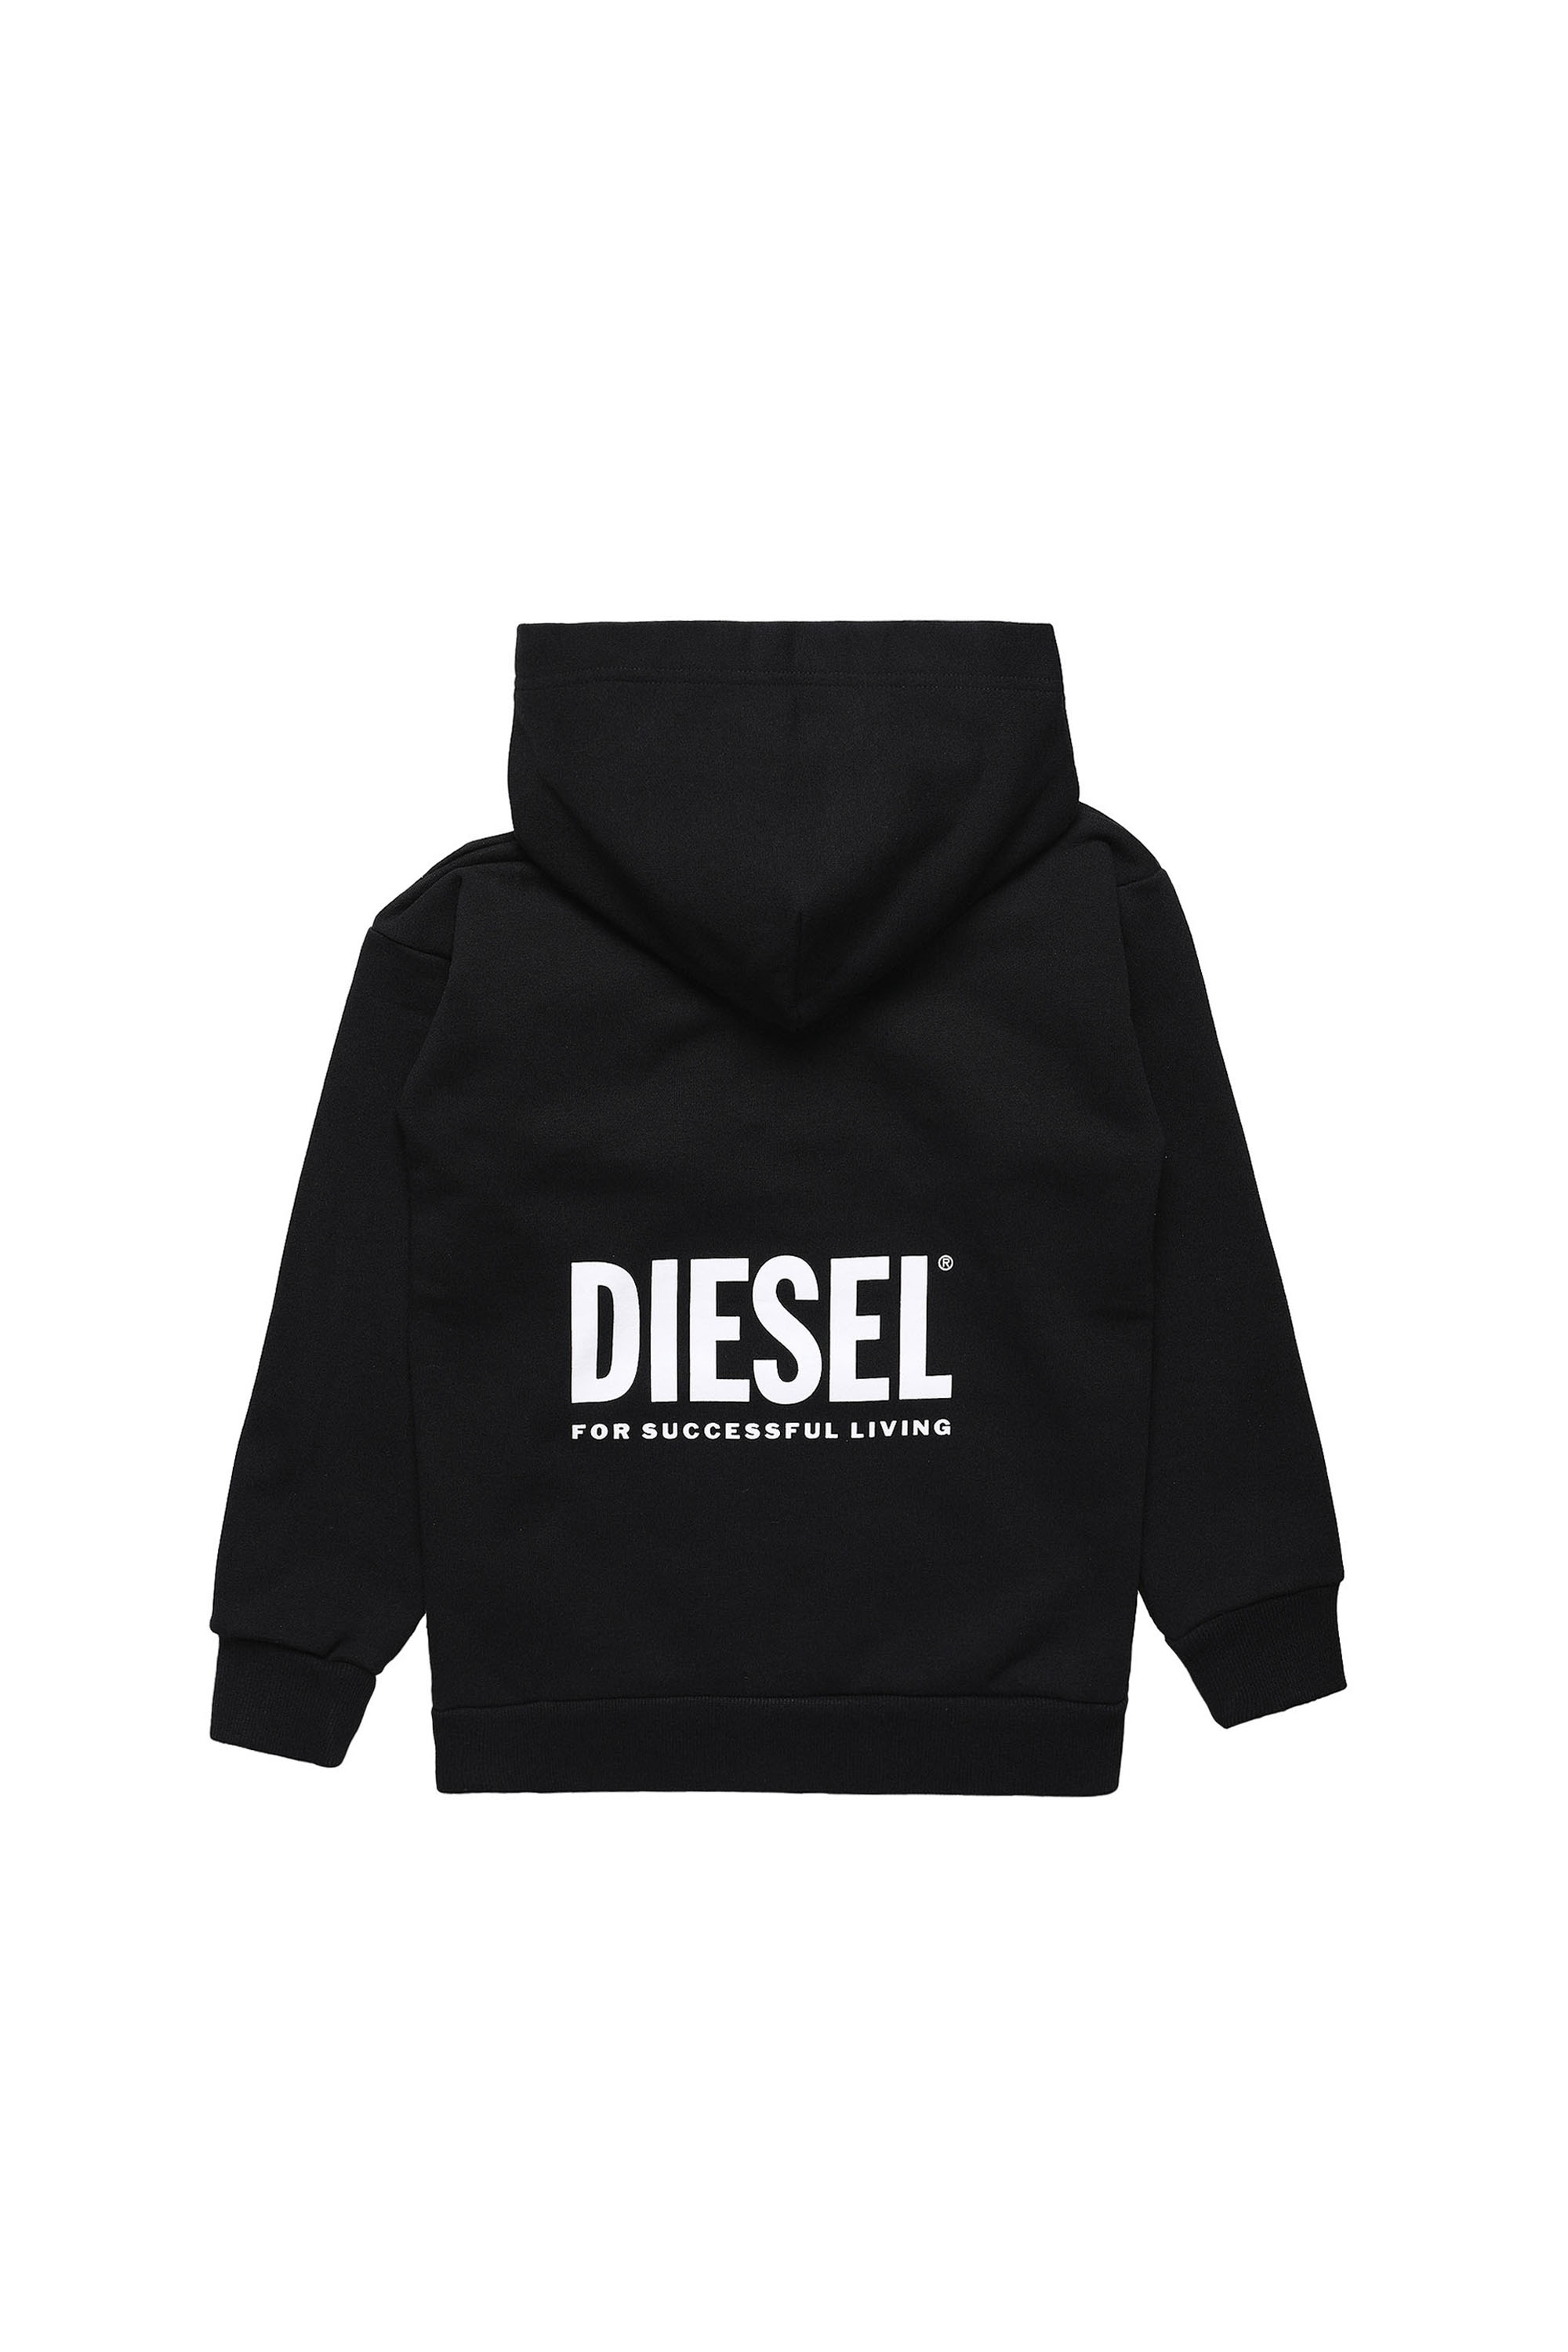 Diesel - LR SGIRKHOOD VIC, Black - Image 2